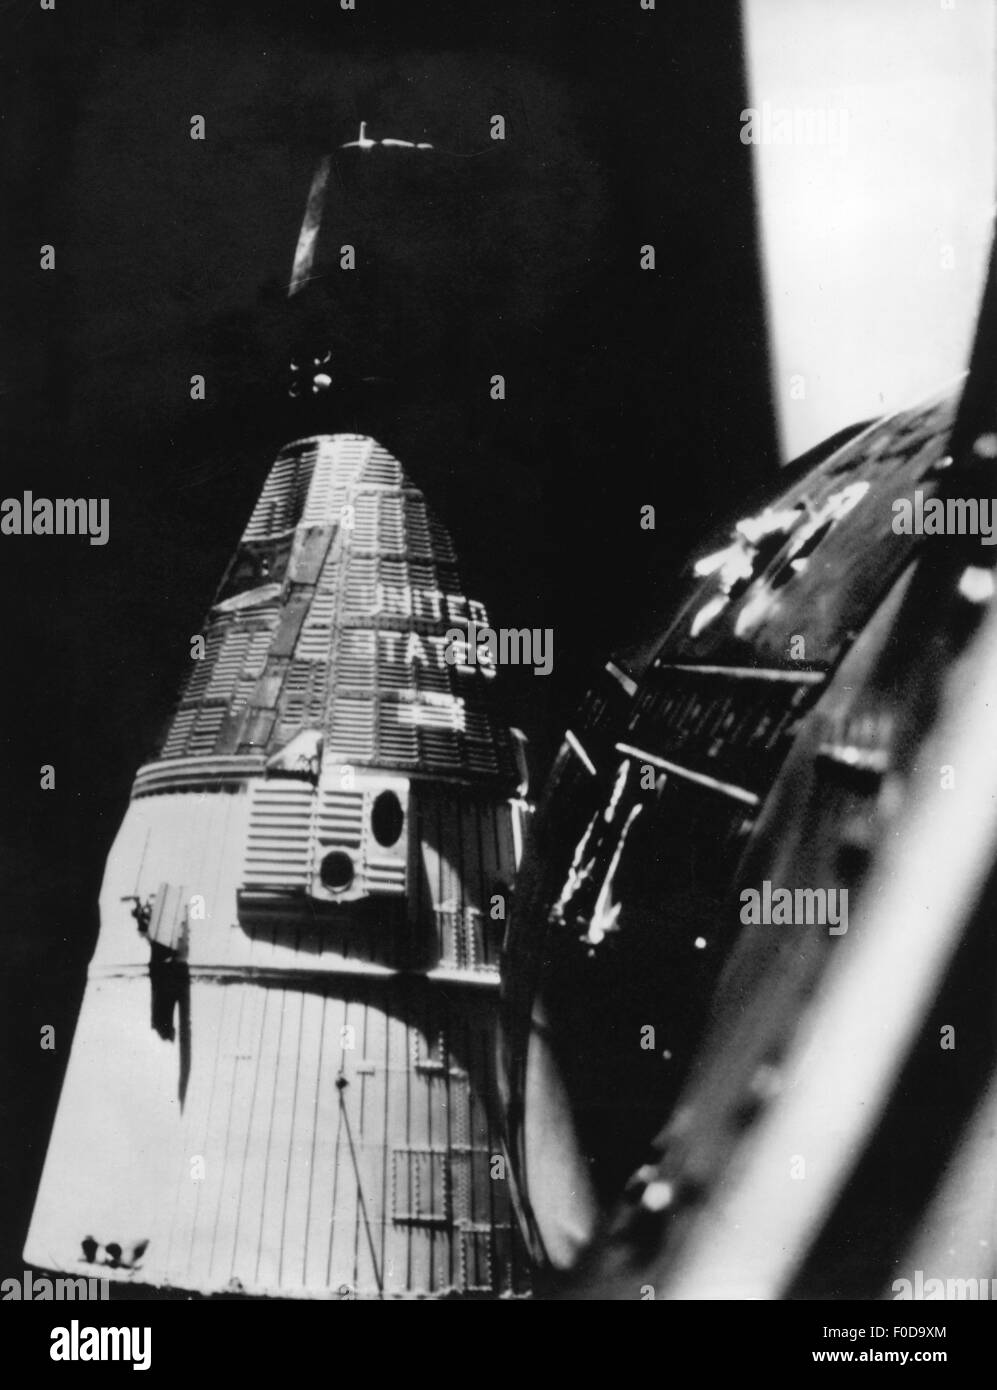 luft- und raumfahrt, Projekt Gemini, 1963-1966, Rendezvous der Raumfahrzeuge Gemini 6 (Walter M. Schirra und Thomas P. Stafford) und Gemini 7 (Frank Bormann und James A. Lovell), Fotografie aus Gemini 6, 15.12.1965, NASA, Raumfahrer, Raumfahrer, Raumkapsel Raumfahrt, Flug, 60er, 60er, 60er, 60er, 60er, Historische, GT-6, 6A, GT-7, 20th Century, zusätzliche-Rights-Clearences-nicht verfügbar Stockfoto